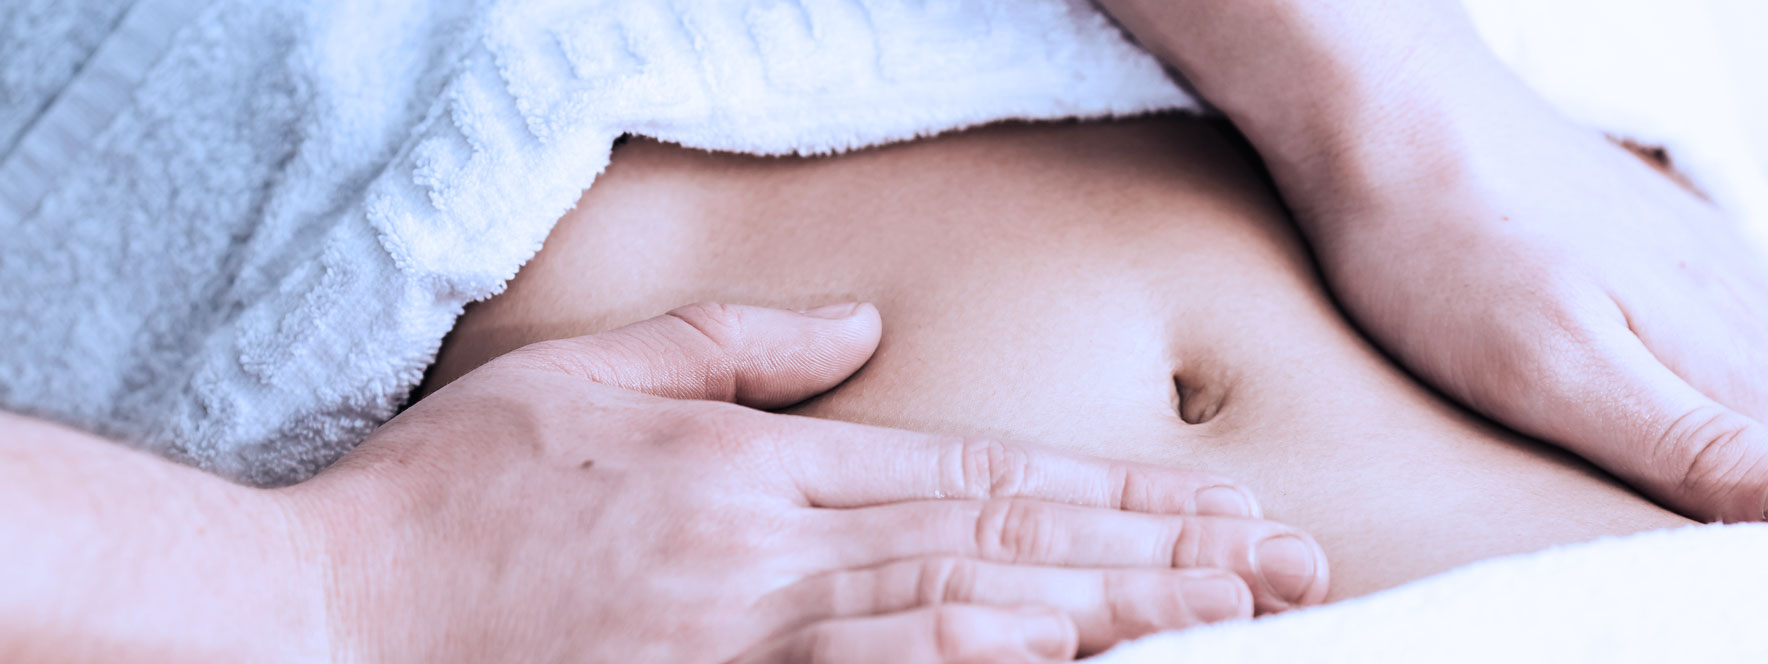 Femme reçoit un massage du ventre afin d'assouplir les adhérences